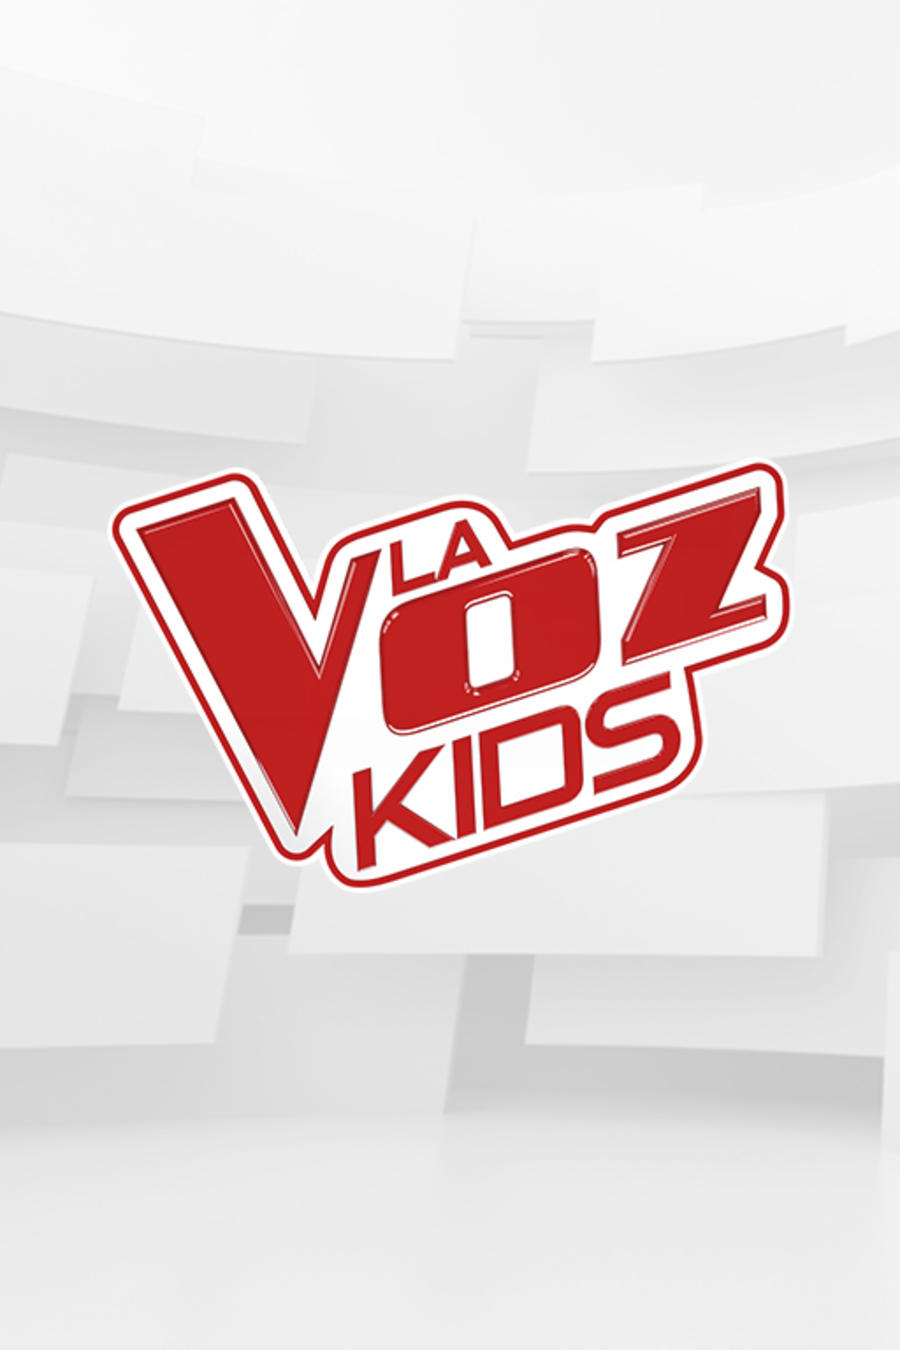 Logo de La Voz Kids